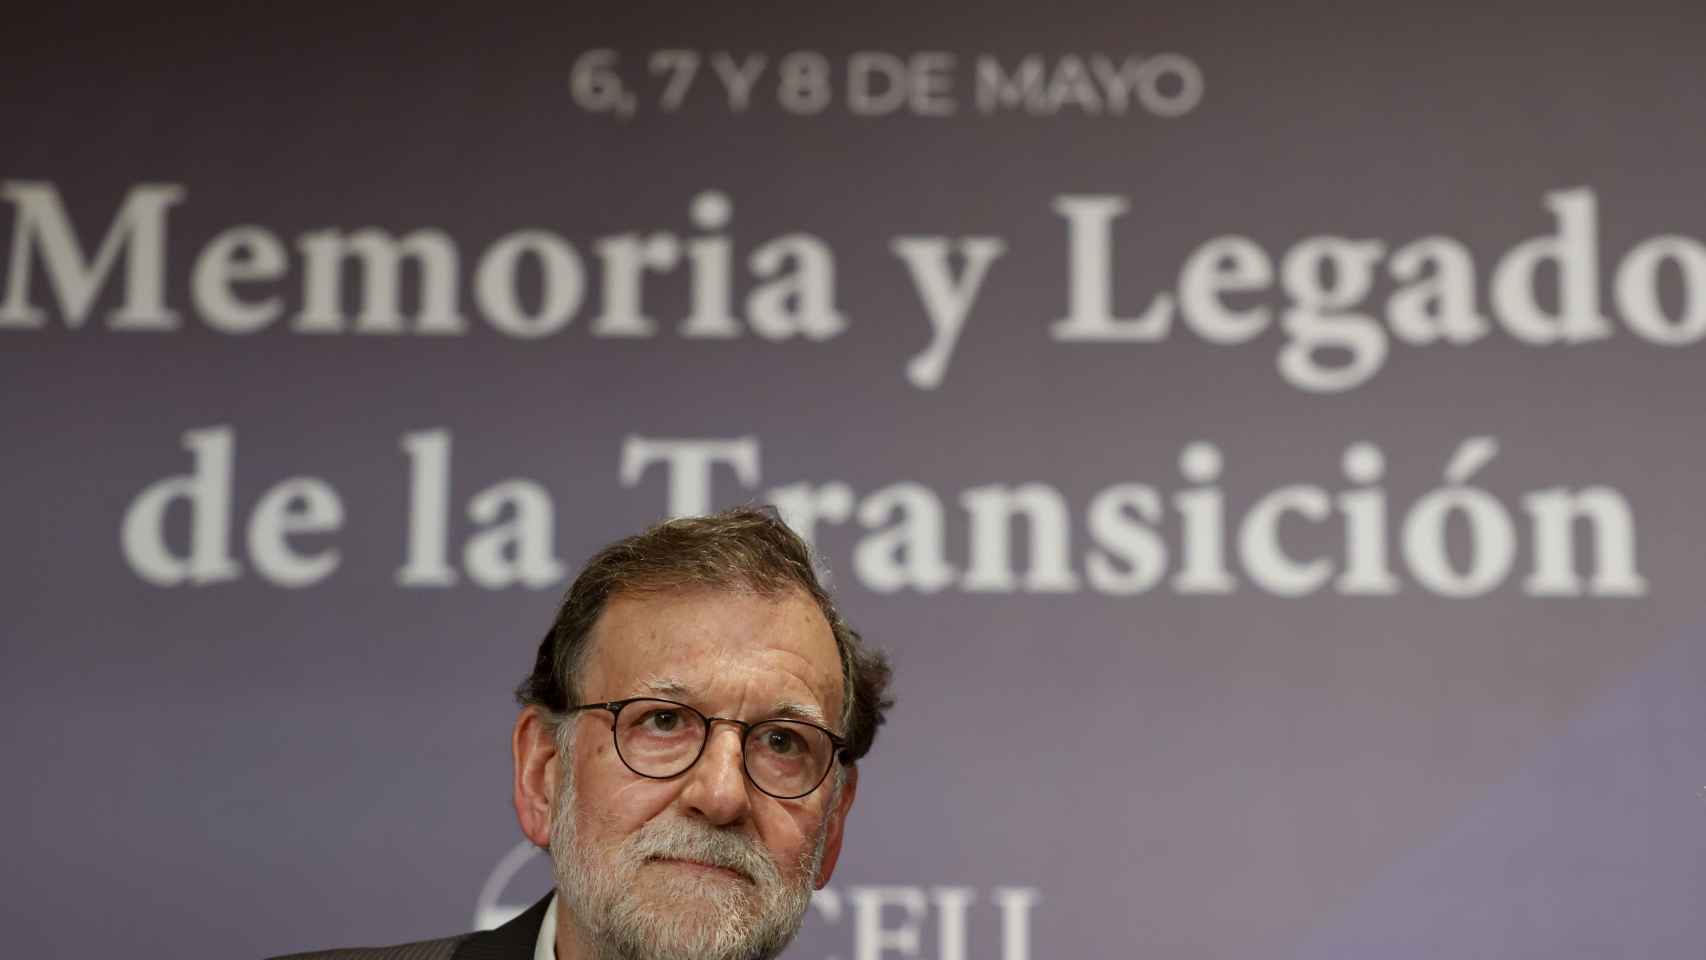 El expresidente del Gobierno, Mariano Rajoy, durante su intervención en las jornadas “Memoria y Legado de la Transición”, organizadas por la Universidad CEU Cardenal Herrera. Efe / Ana Escobar